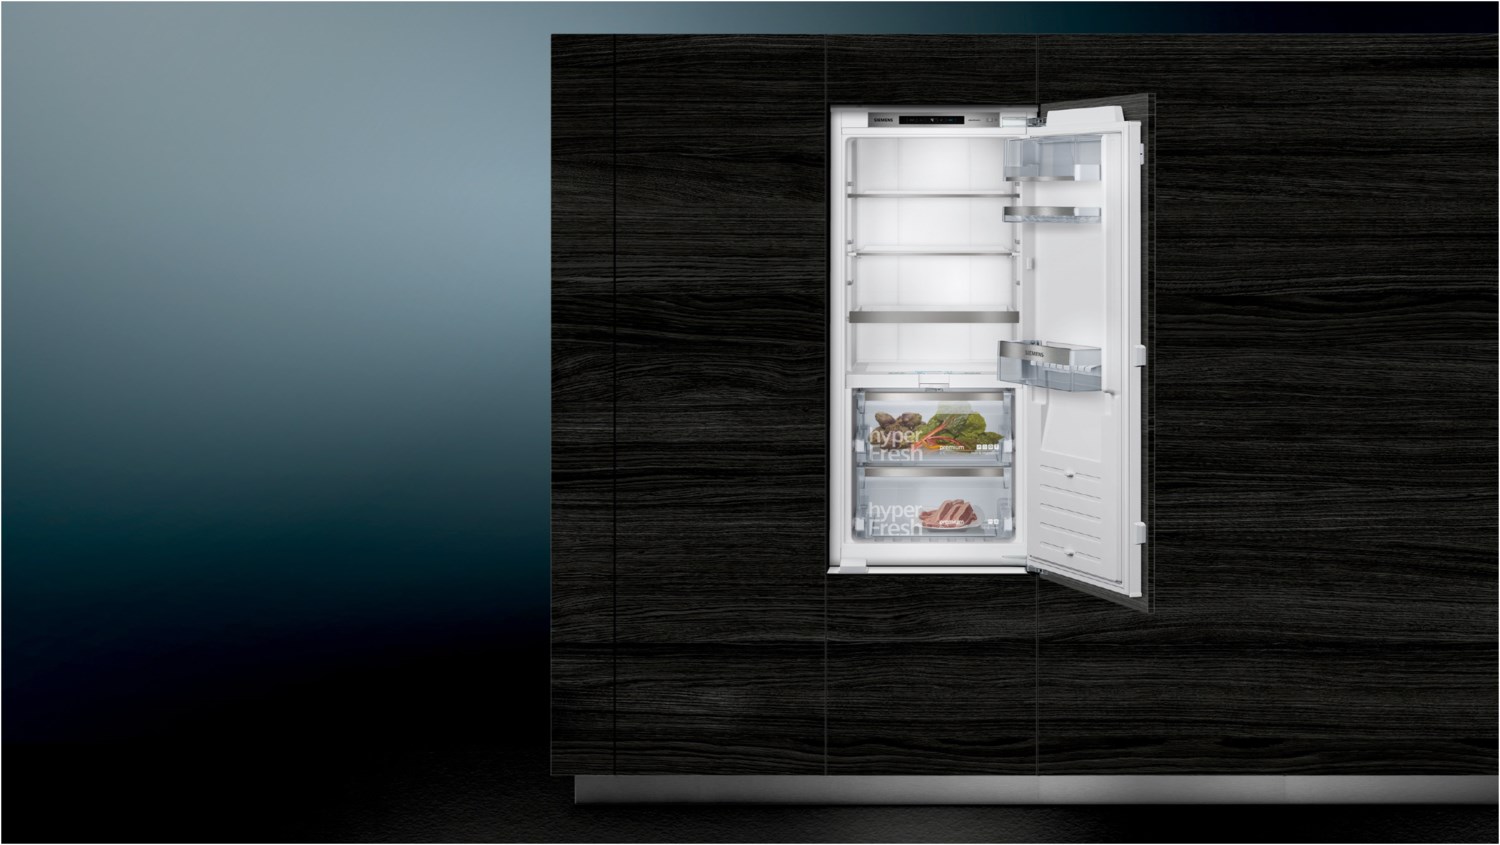 SIEMENS Einbaukühlschrank iQ700 KI41FADE0, 122,1 cm hoch, 55,8 cm breit